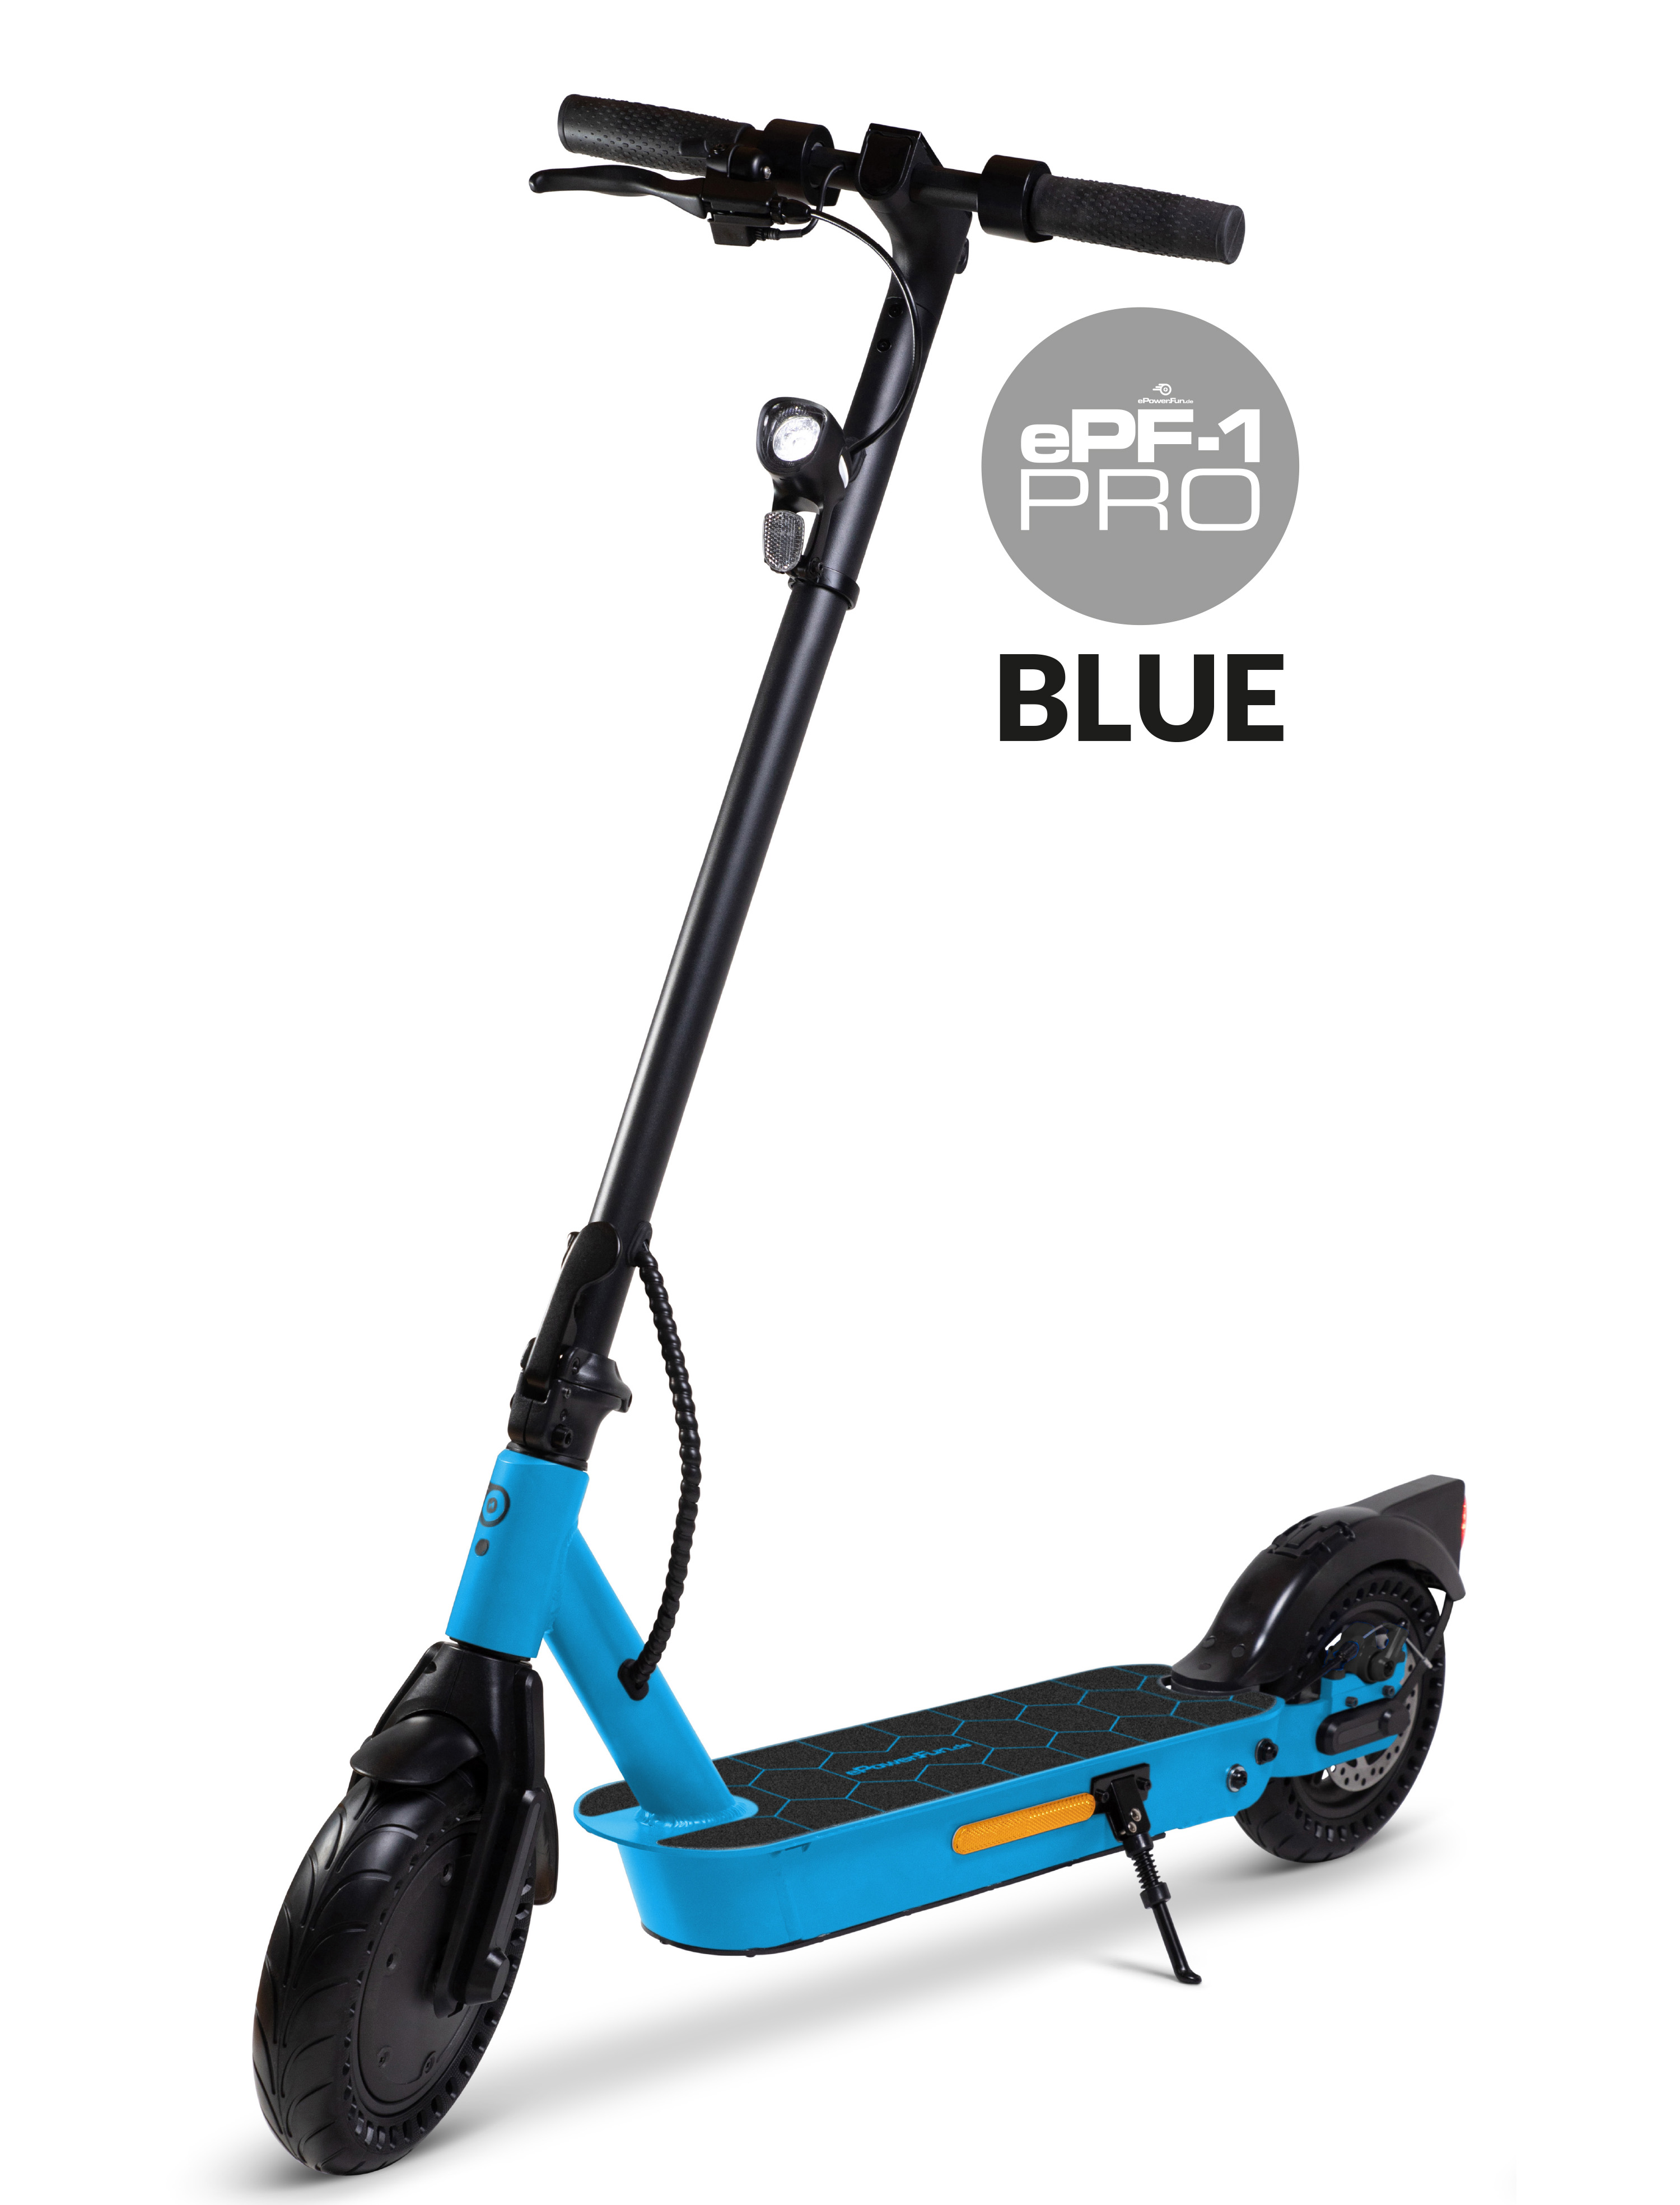 Vorbestellung - ePF-1 PRO Blue eScooter mit Straßenzulassung